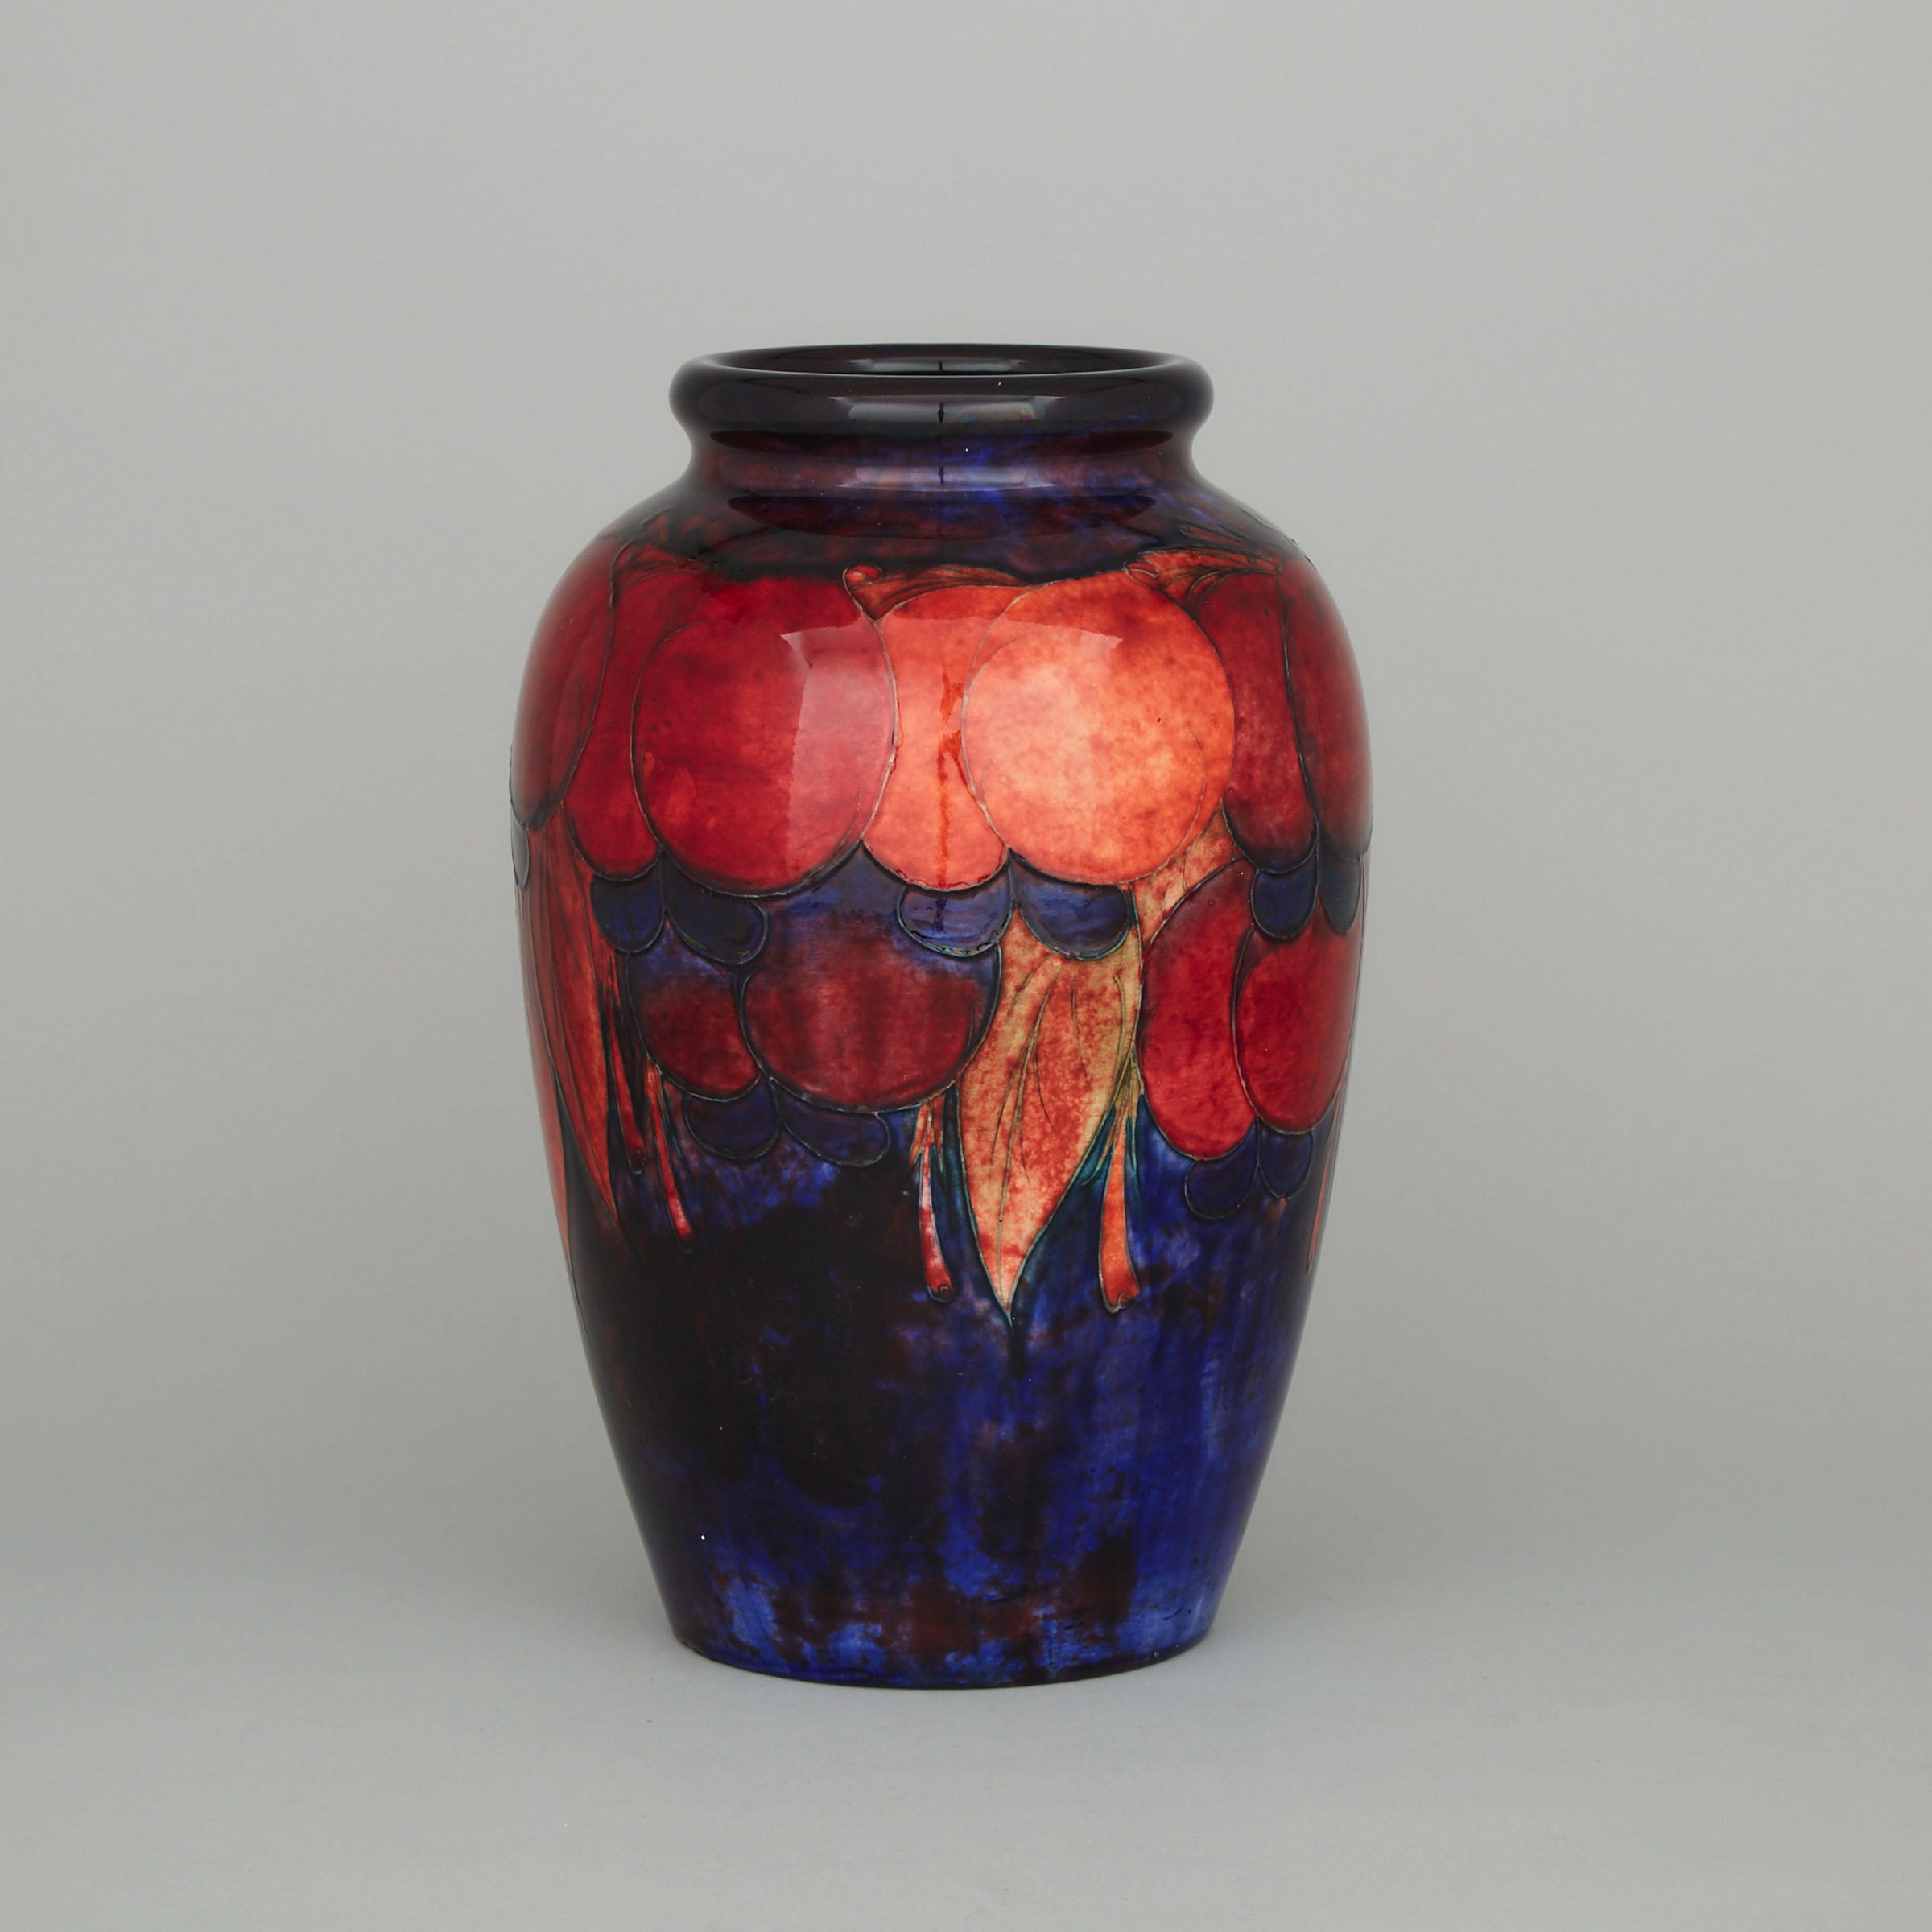 Moorcroft Flambé Wisteria Vase, c.1928-30